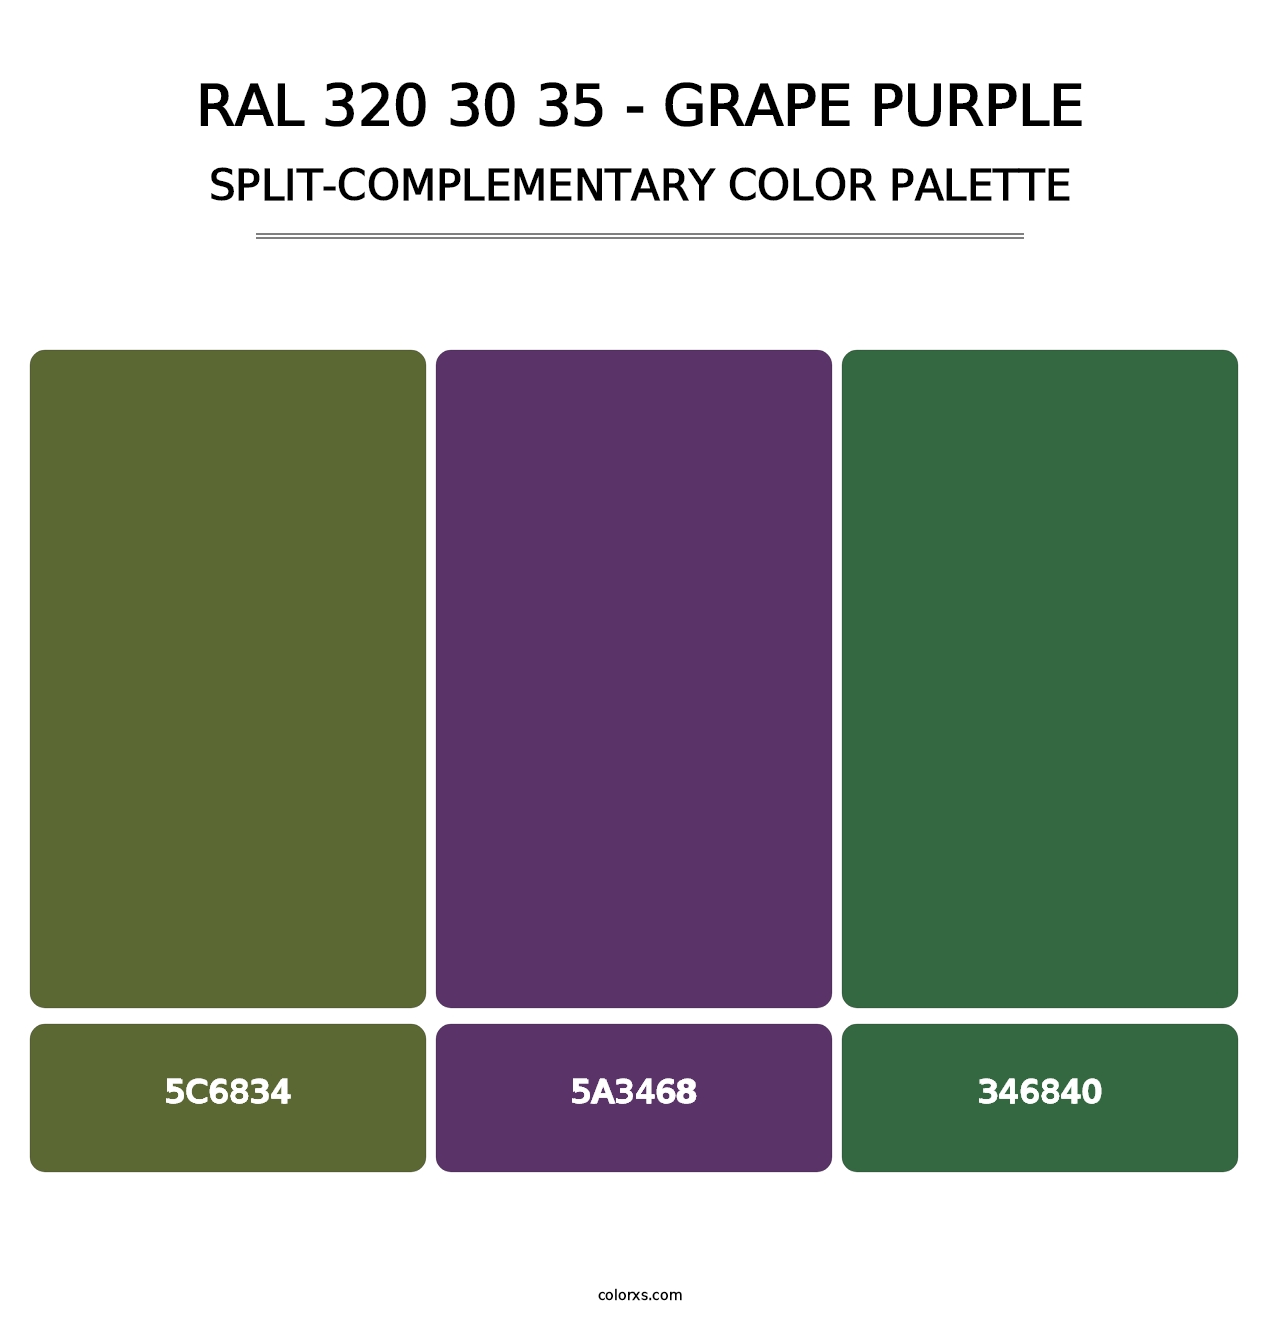 RAL 320 30 35 - Grape Purple - Split-Complementary Color Palette